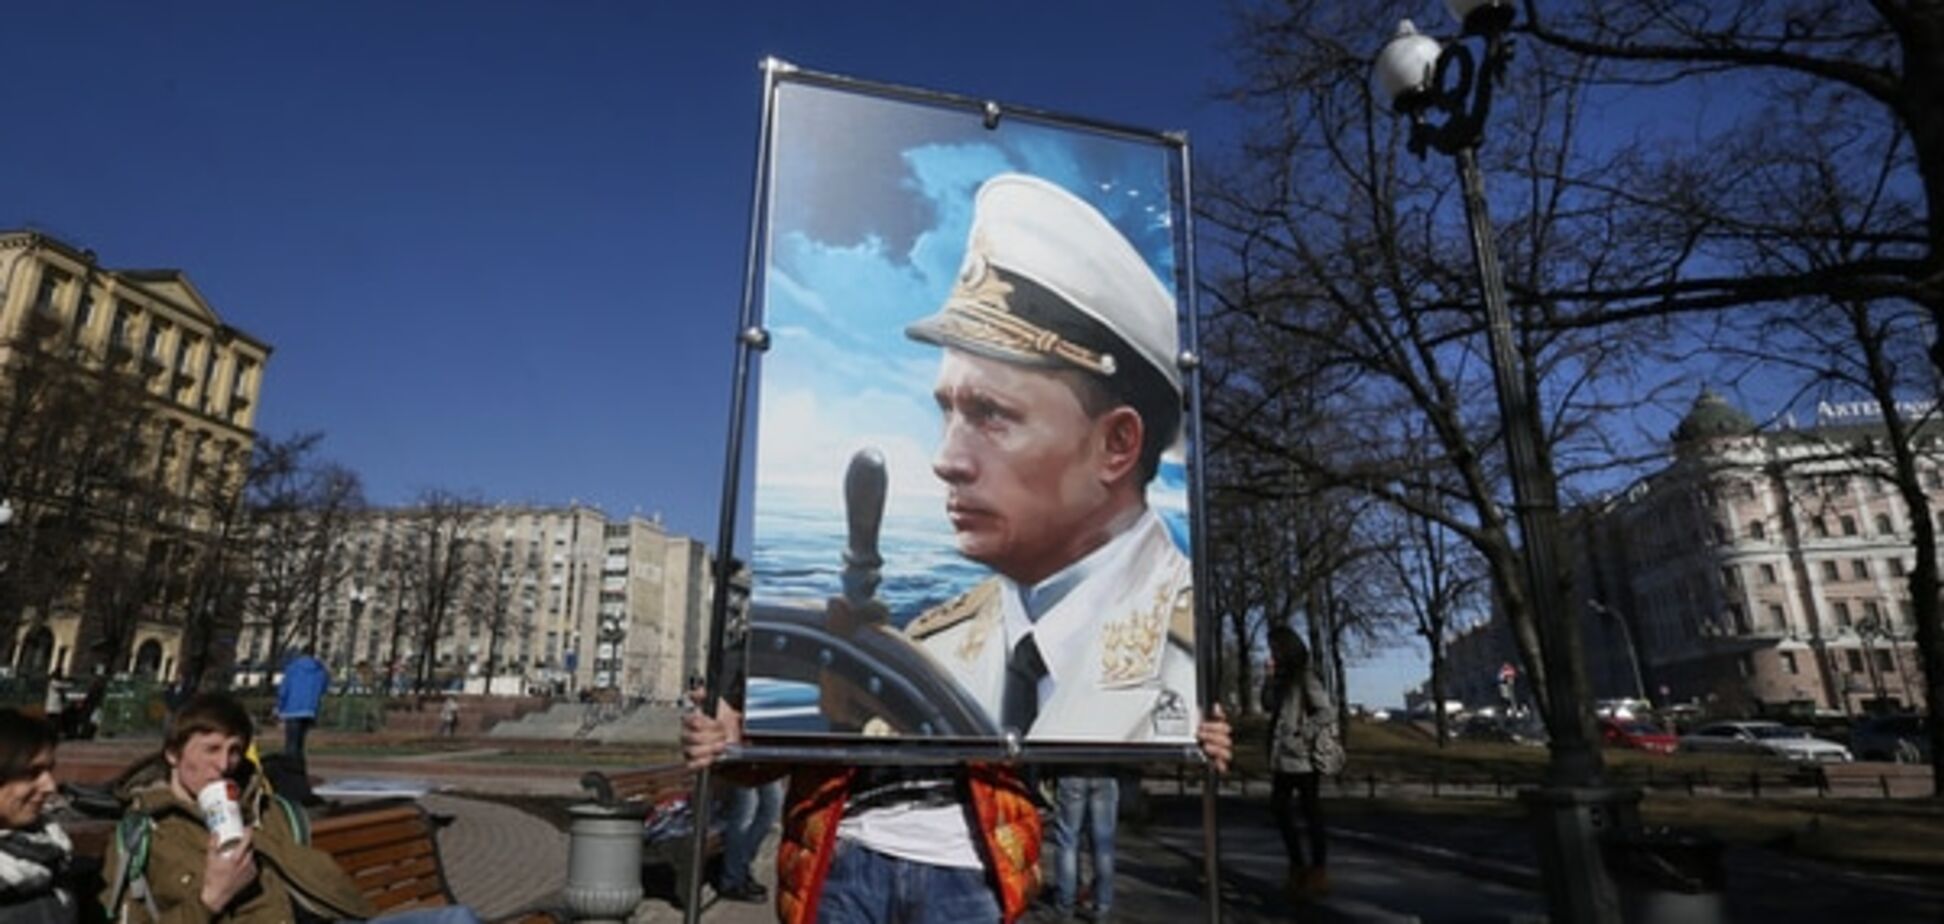 Юрист розповів про катастрофічні для Росії правові наслідки анексії Криму